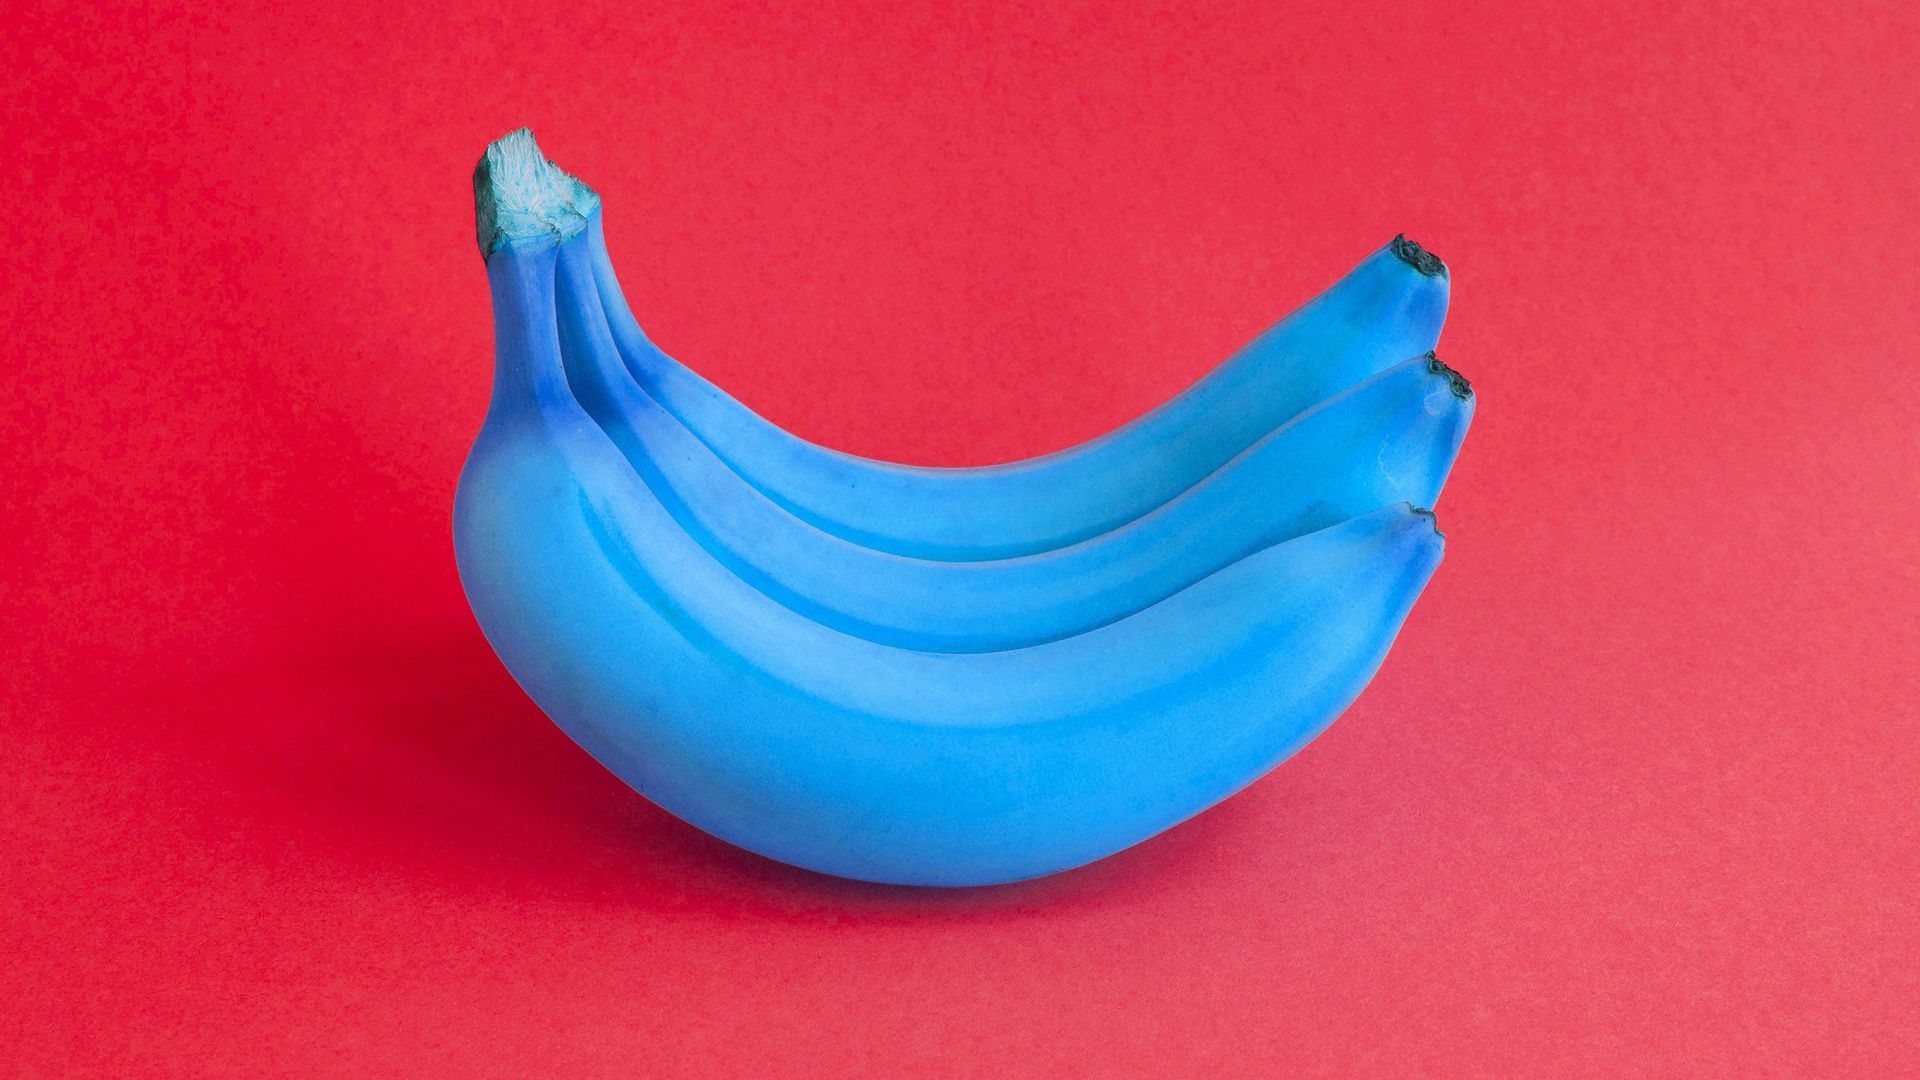 Goûtez à la banane bleue ! C'est la couleur qui alimentera notre assiette demain...